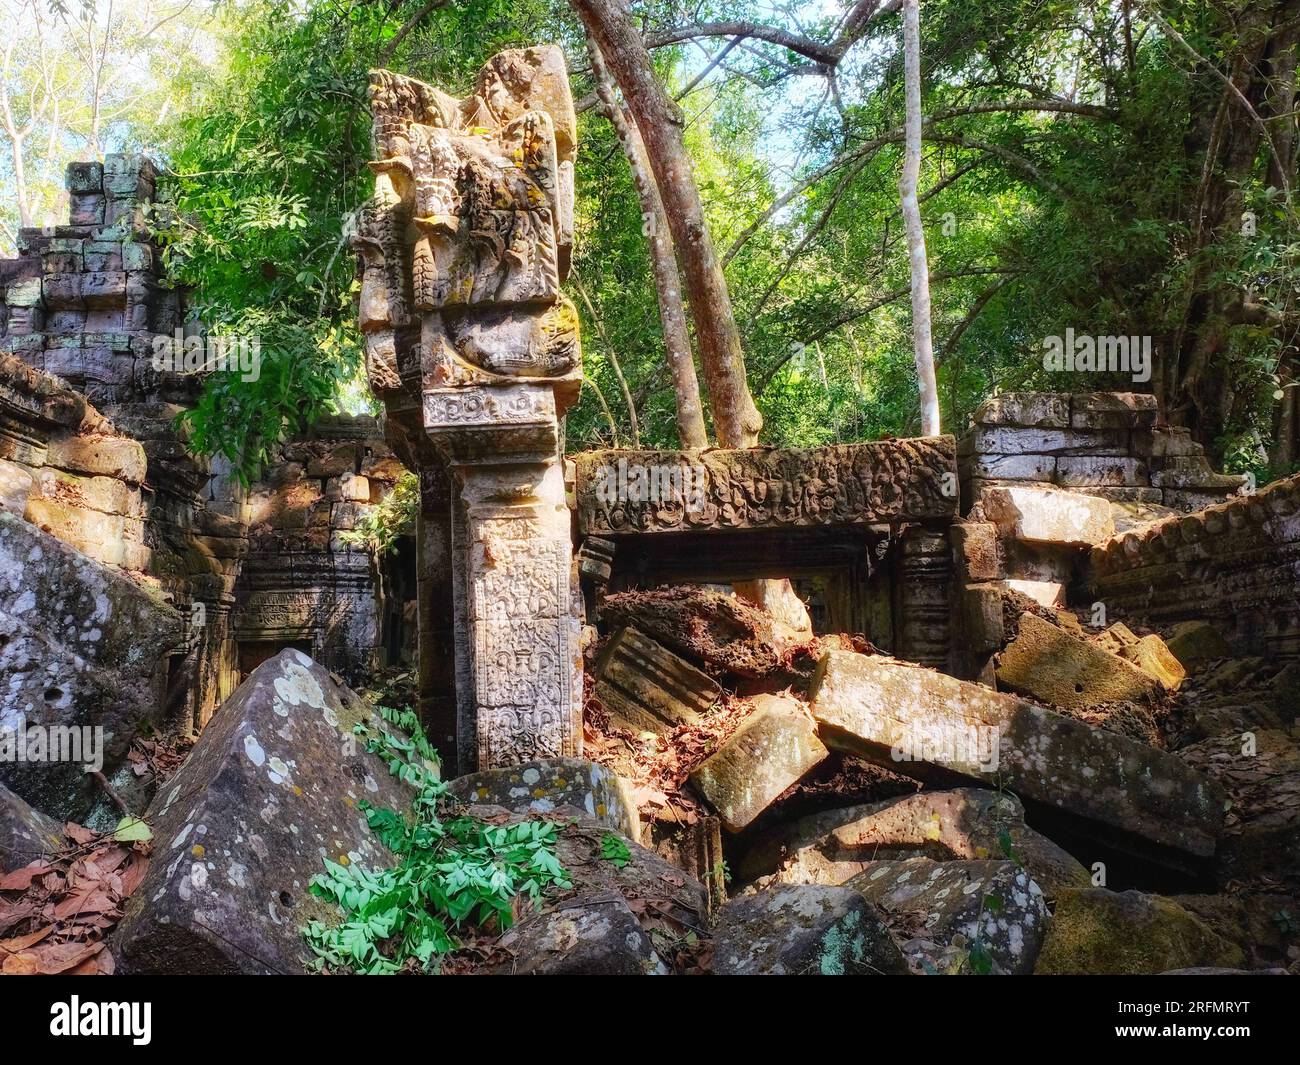 Dévoiler le passé : ruines antiques de la civilisation khmère nichées dans la forêt cambodgienne, créant un paysage envoûtant. Banque D'Images